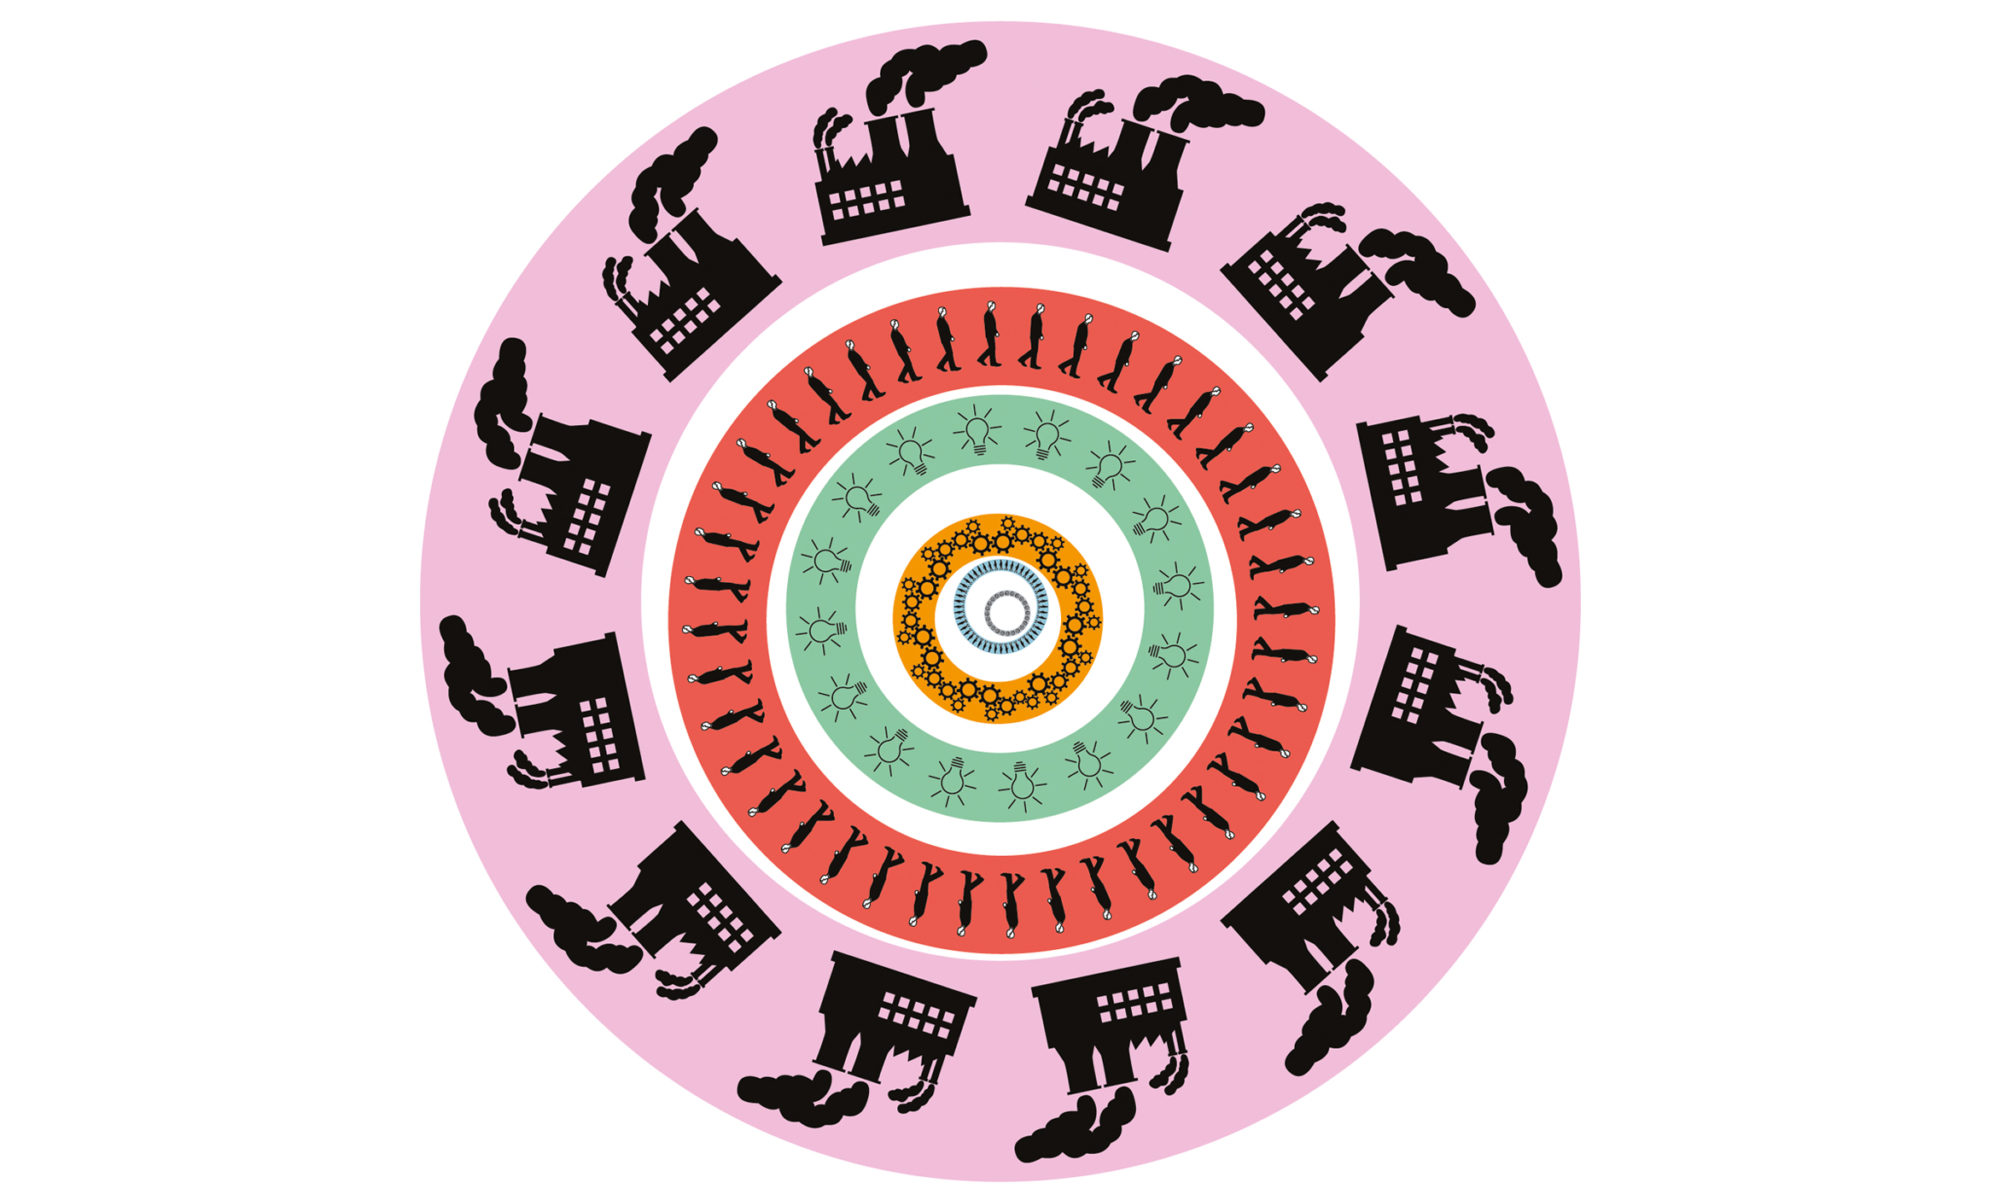 En grafisk snurra med fabriker, människor och andra symboler, mot rundlar i rosa, rött, grönt